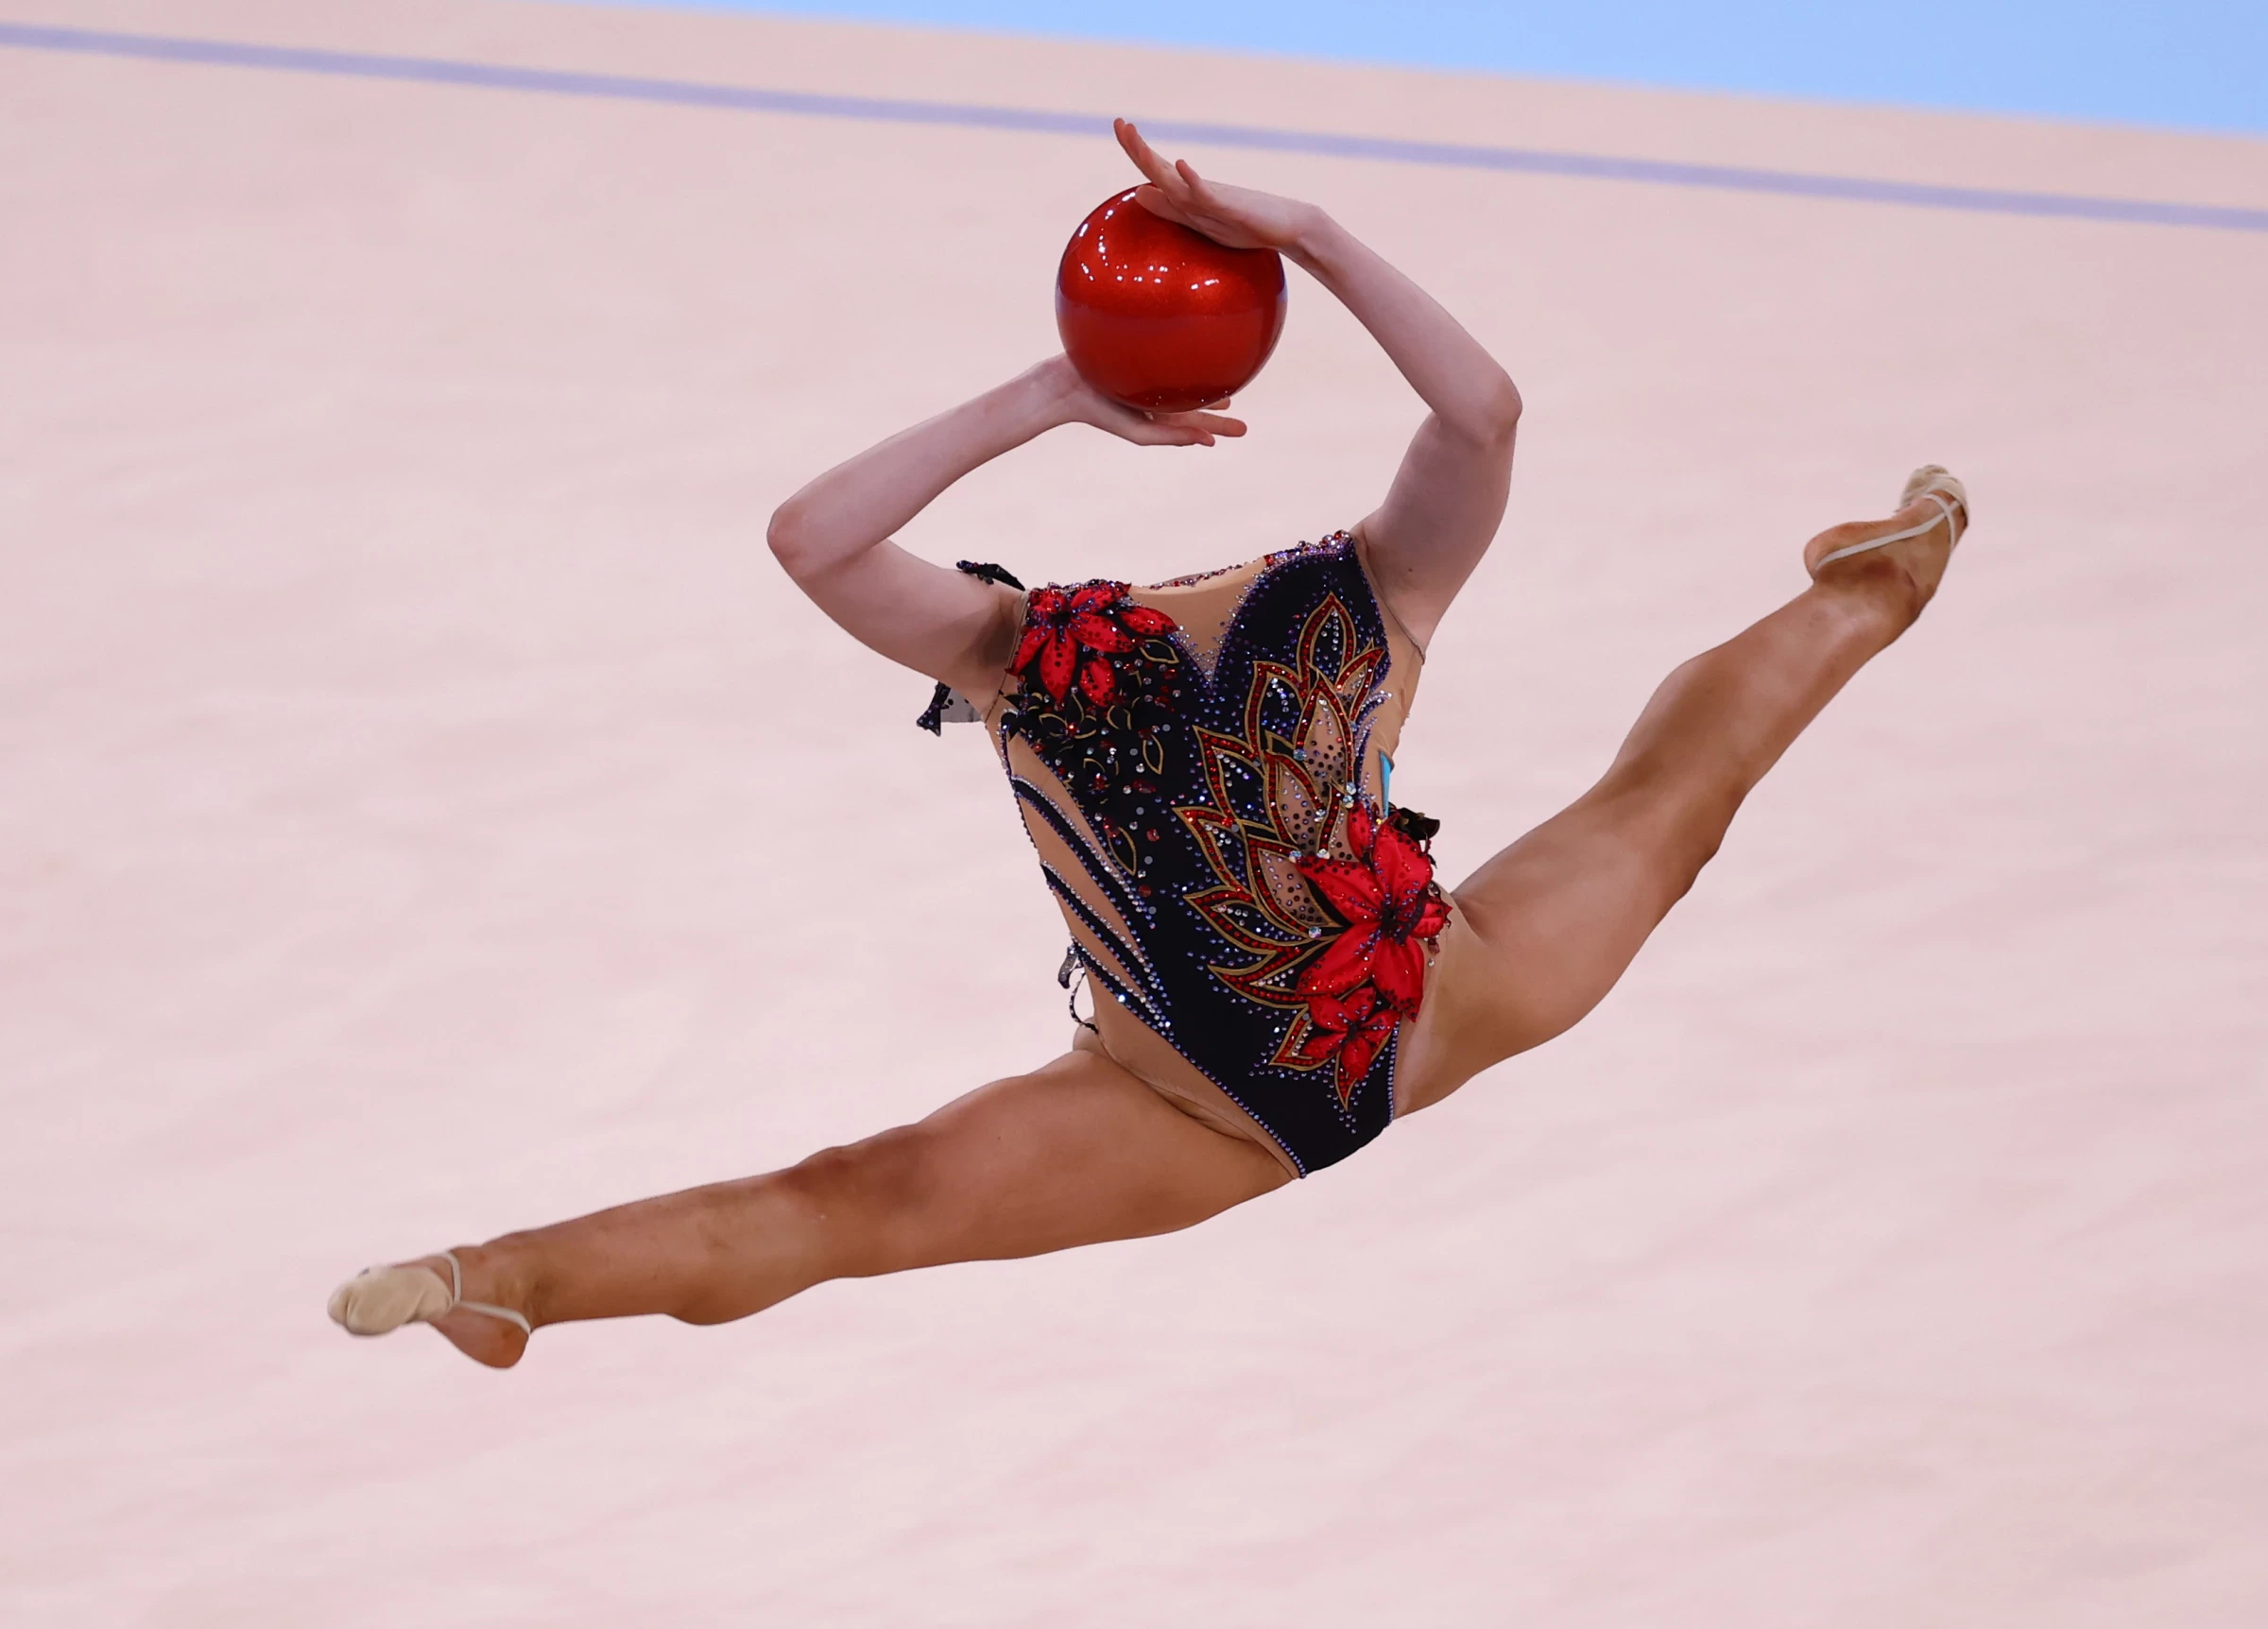 東奧 無頭人 參賽 體操正妹《Alina Adilkhanova》挑戰極限成靈異照片-6